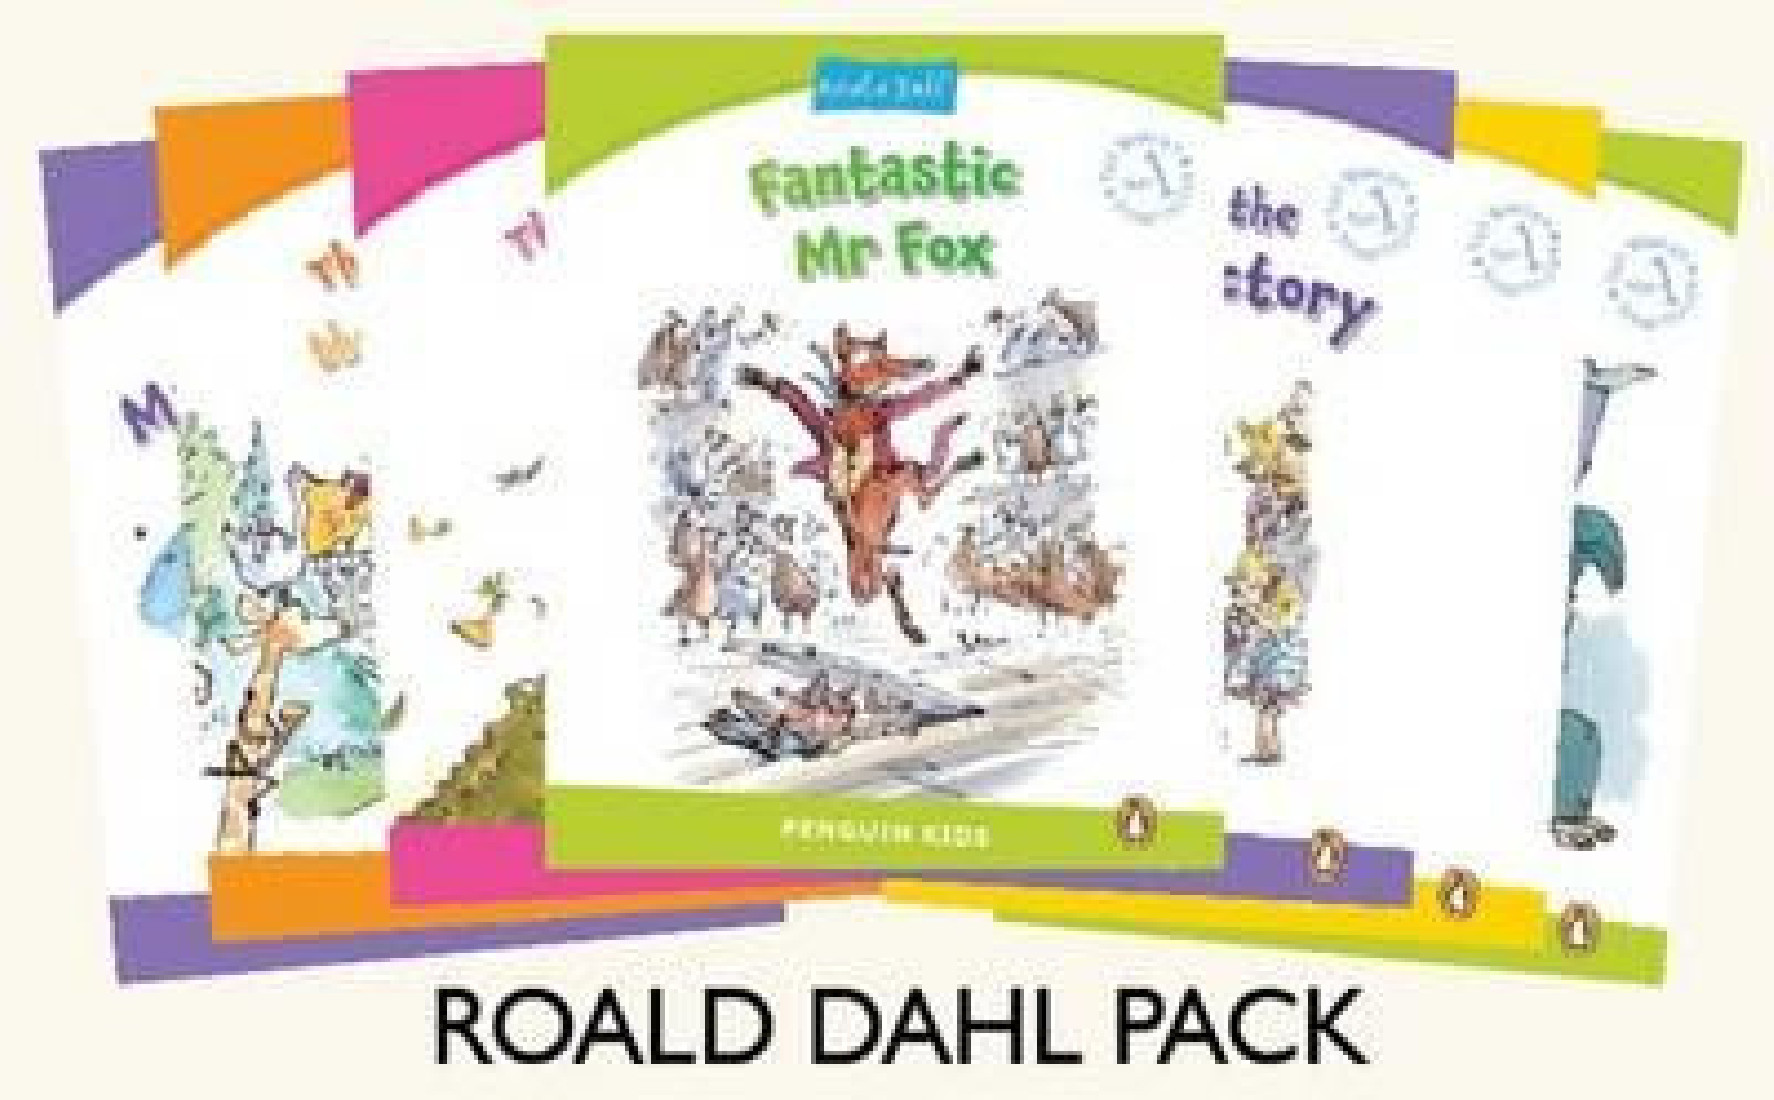 PENGUIN KIDS READER SPECIAL OFFER PACK OF ROALD DAHLS 7 TITLES LEVEL 2-6